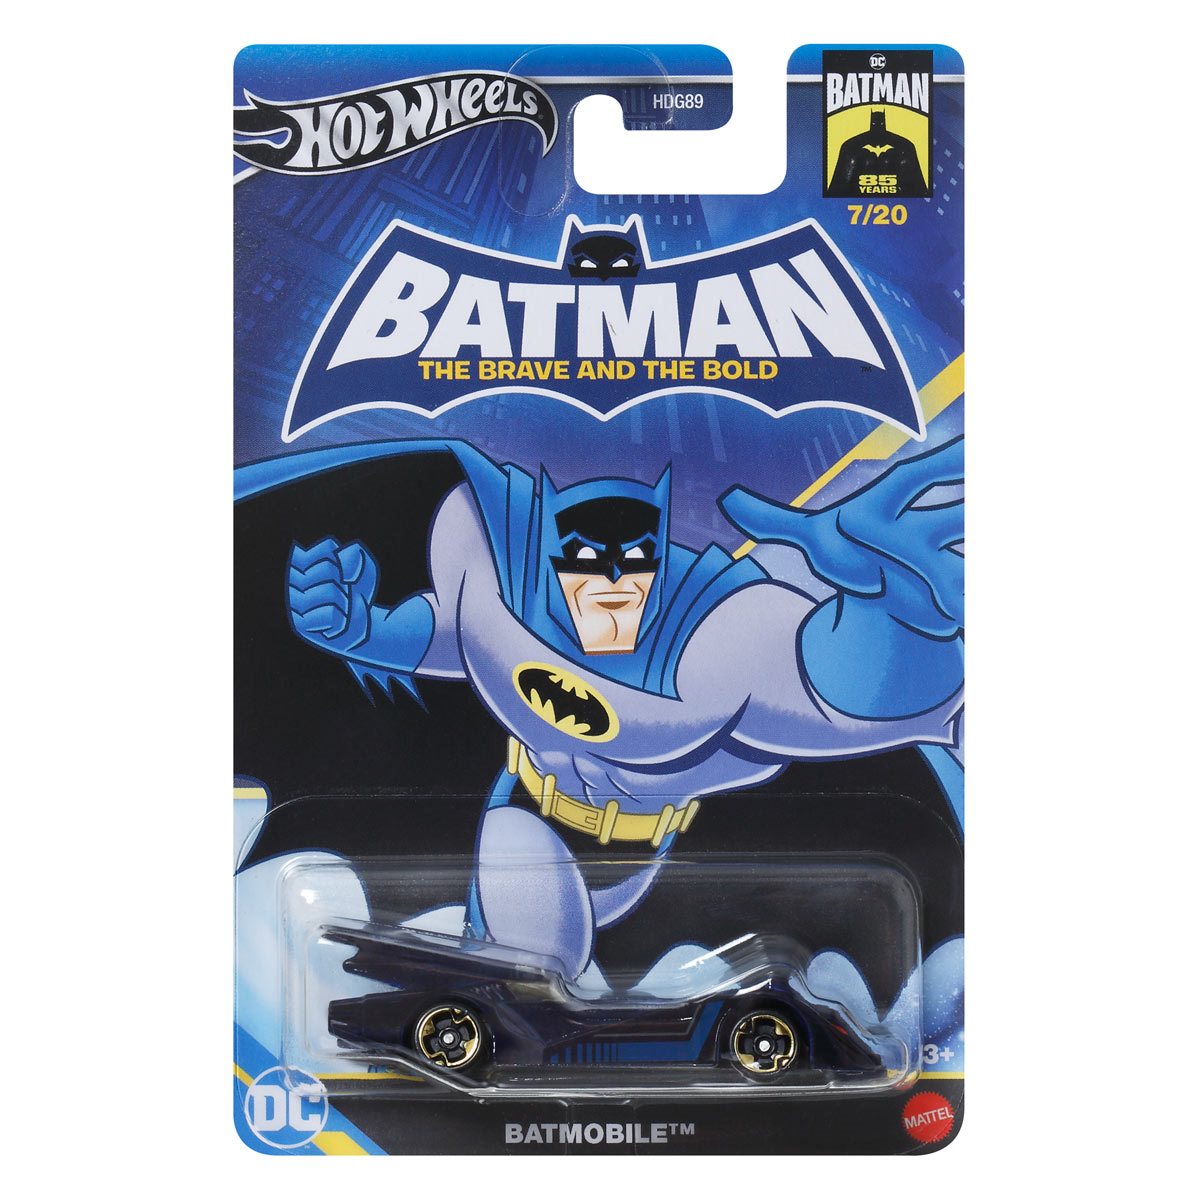 Bat Wheels  Batman batmobile, Hot wheel games, Batman